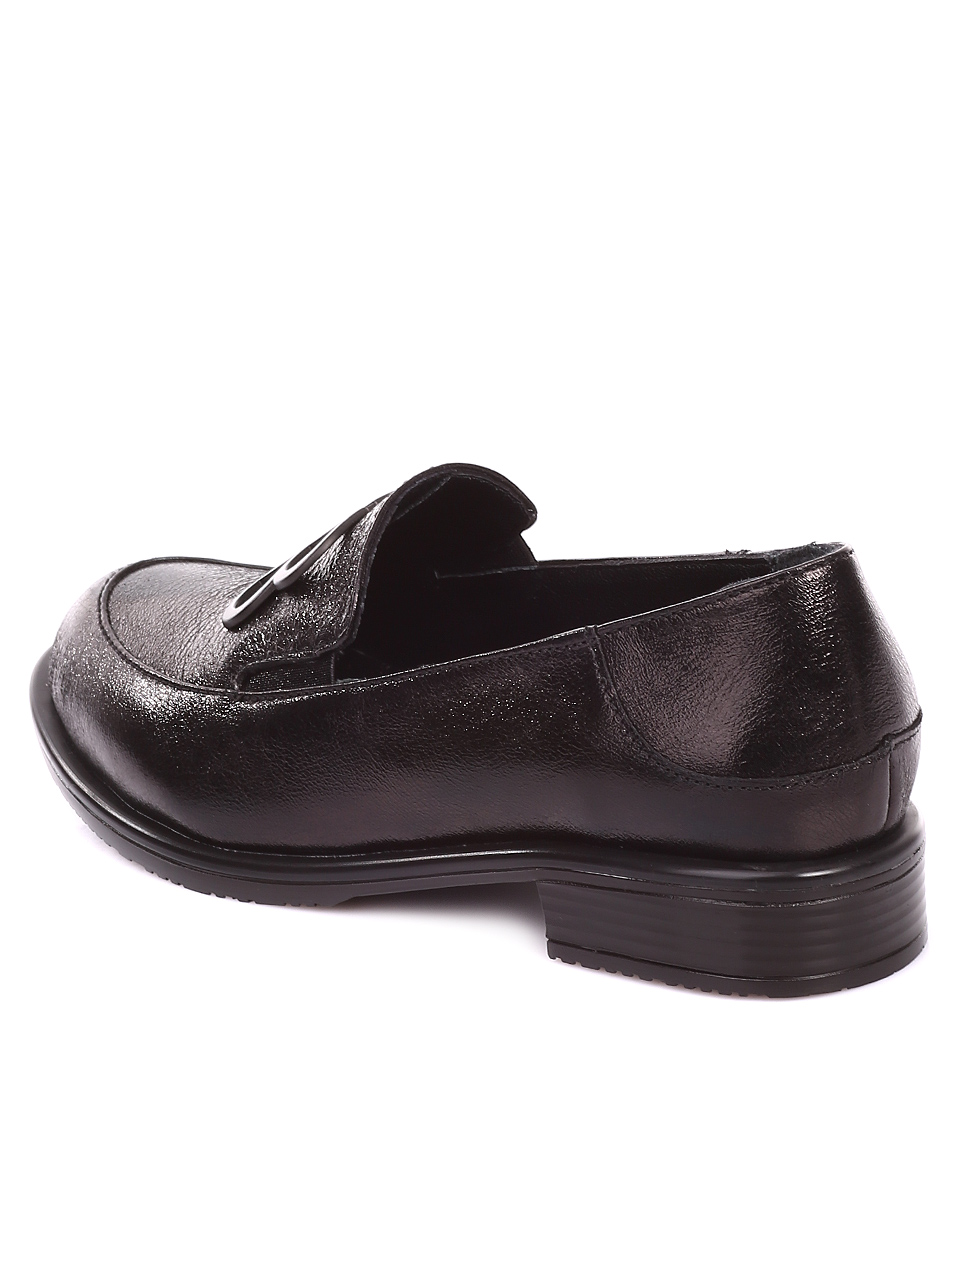 Ежедневни дамски обувки от естествена кожа в черно 3AT-20461 black